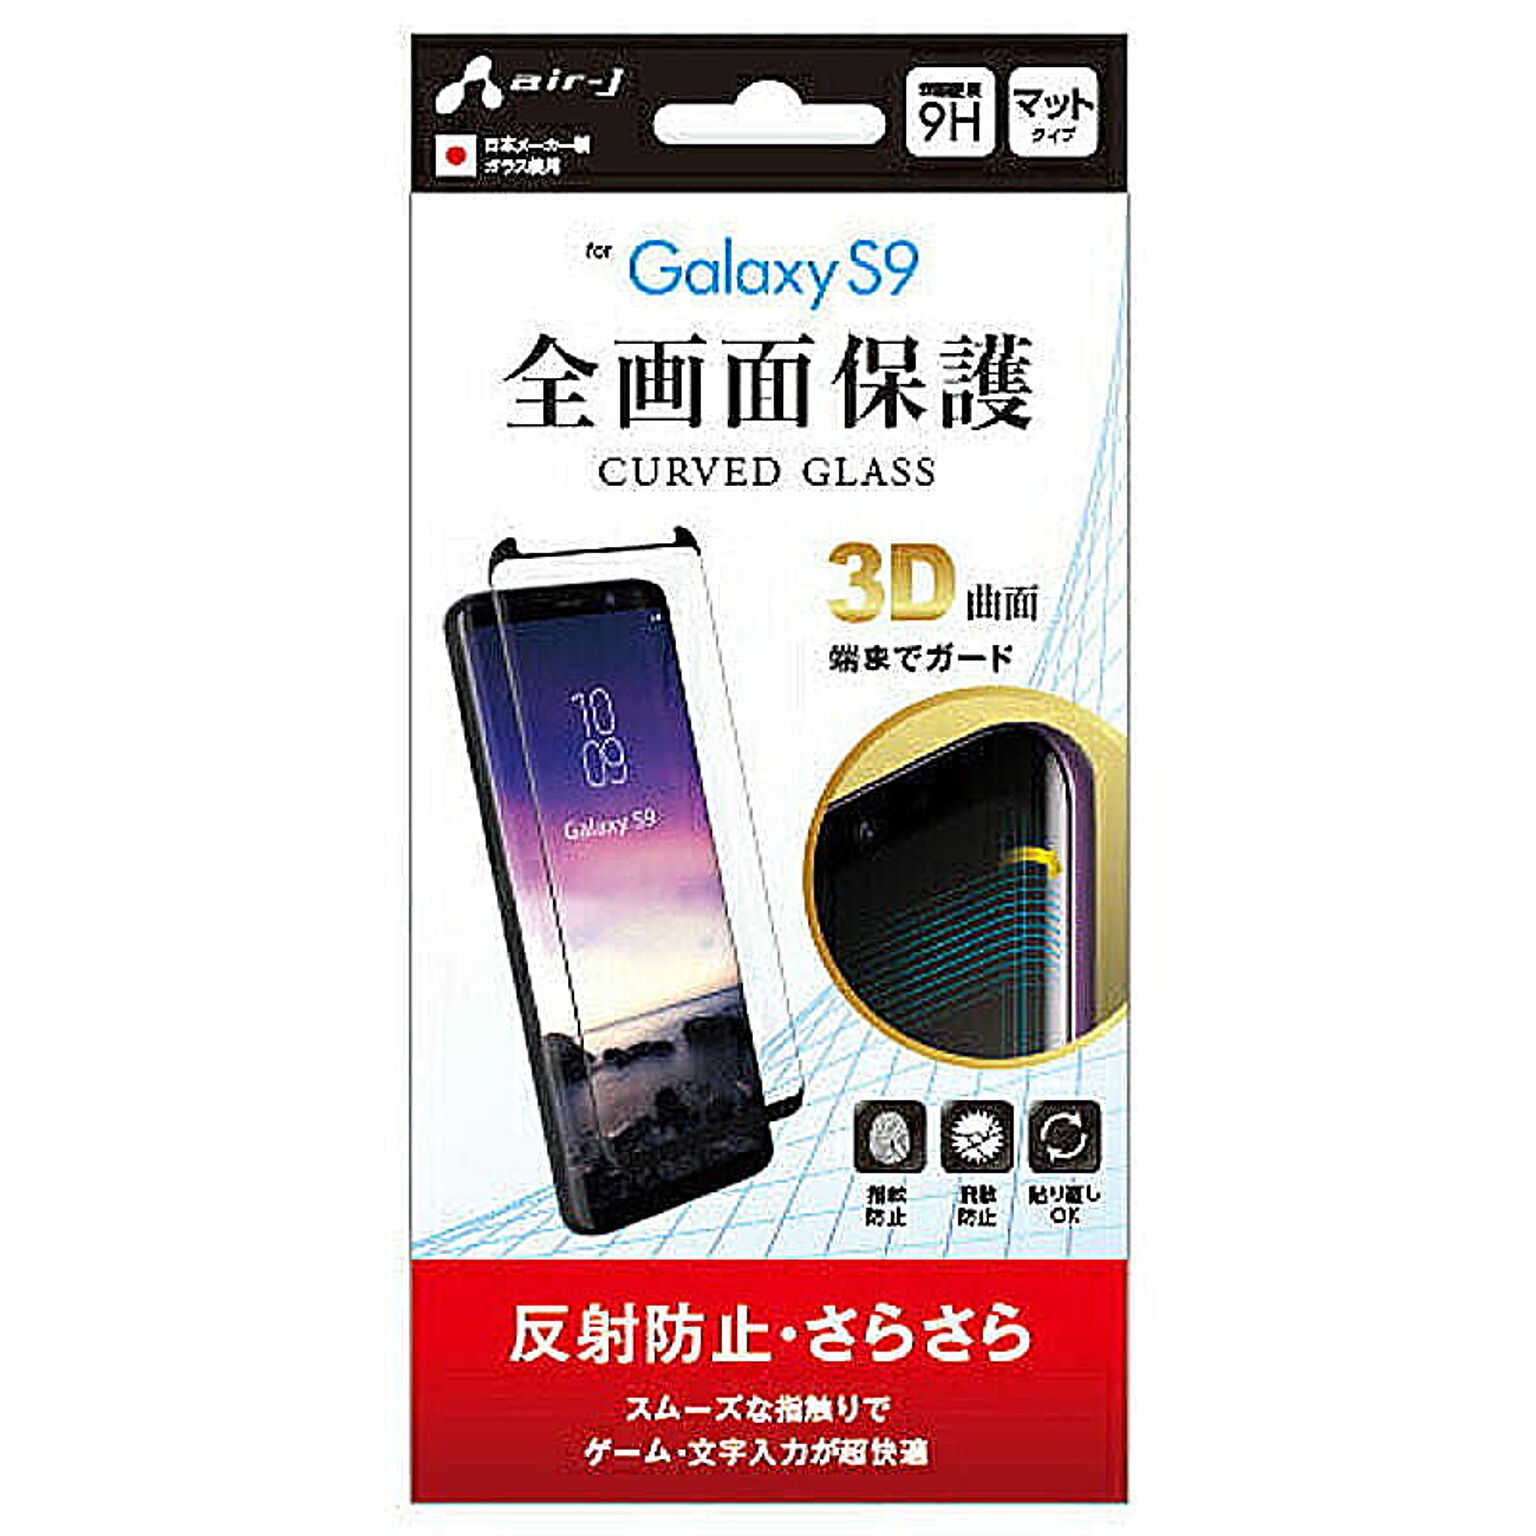 エアージェイ Galaxy s9 ガラスパネル優 反射防止 VGP-S9-2M 管理No. 4526397969332